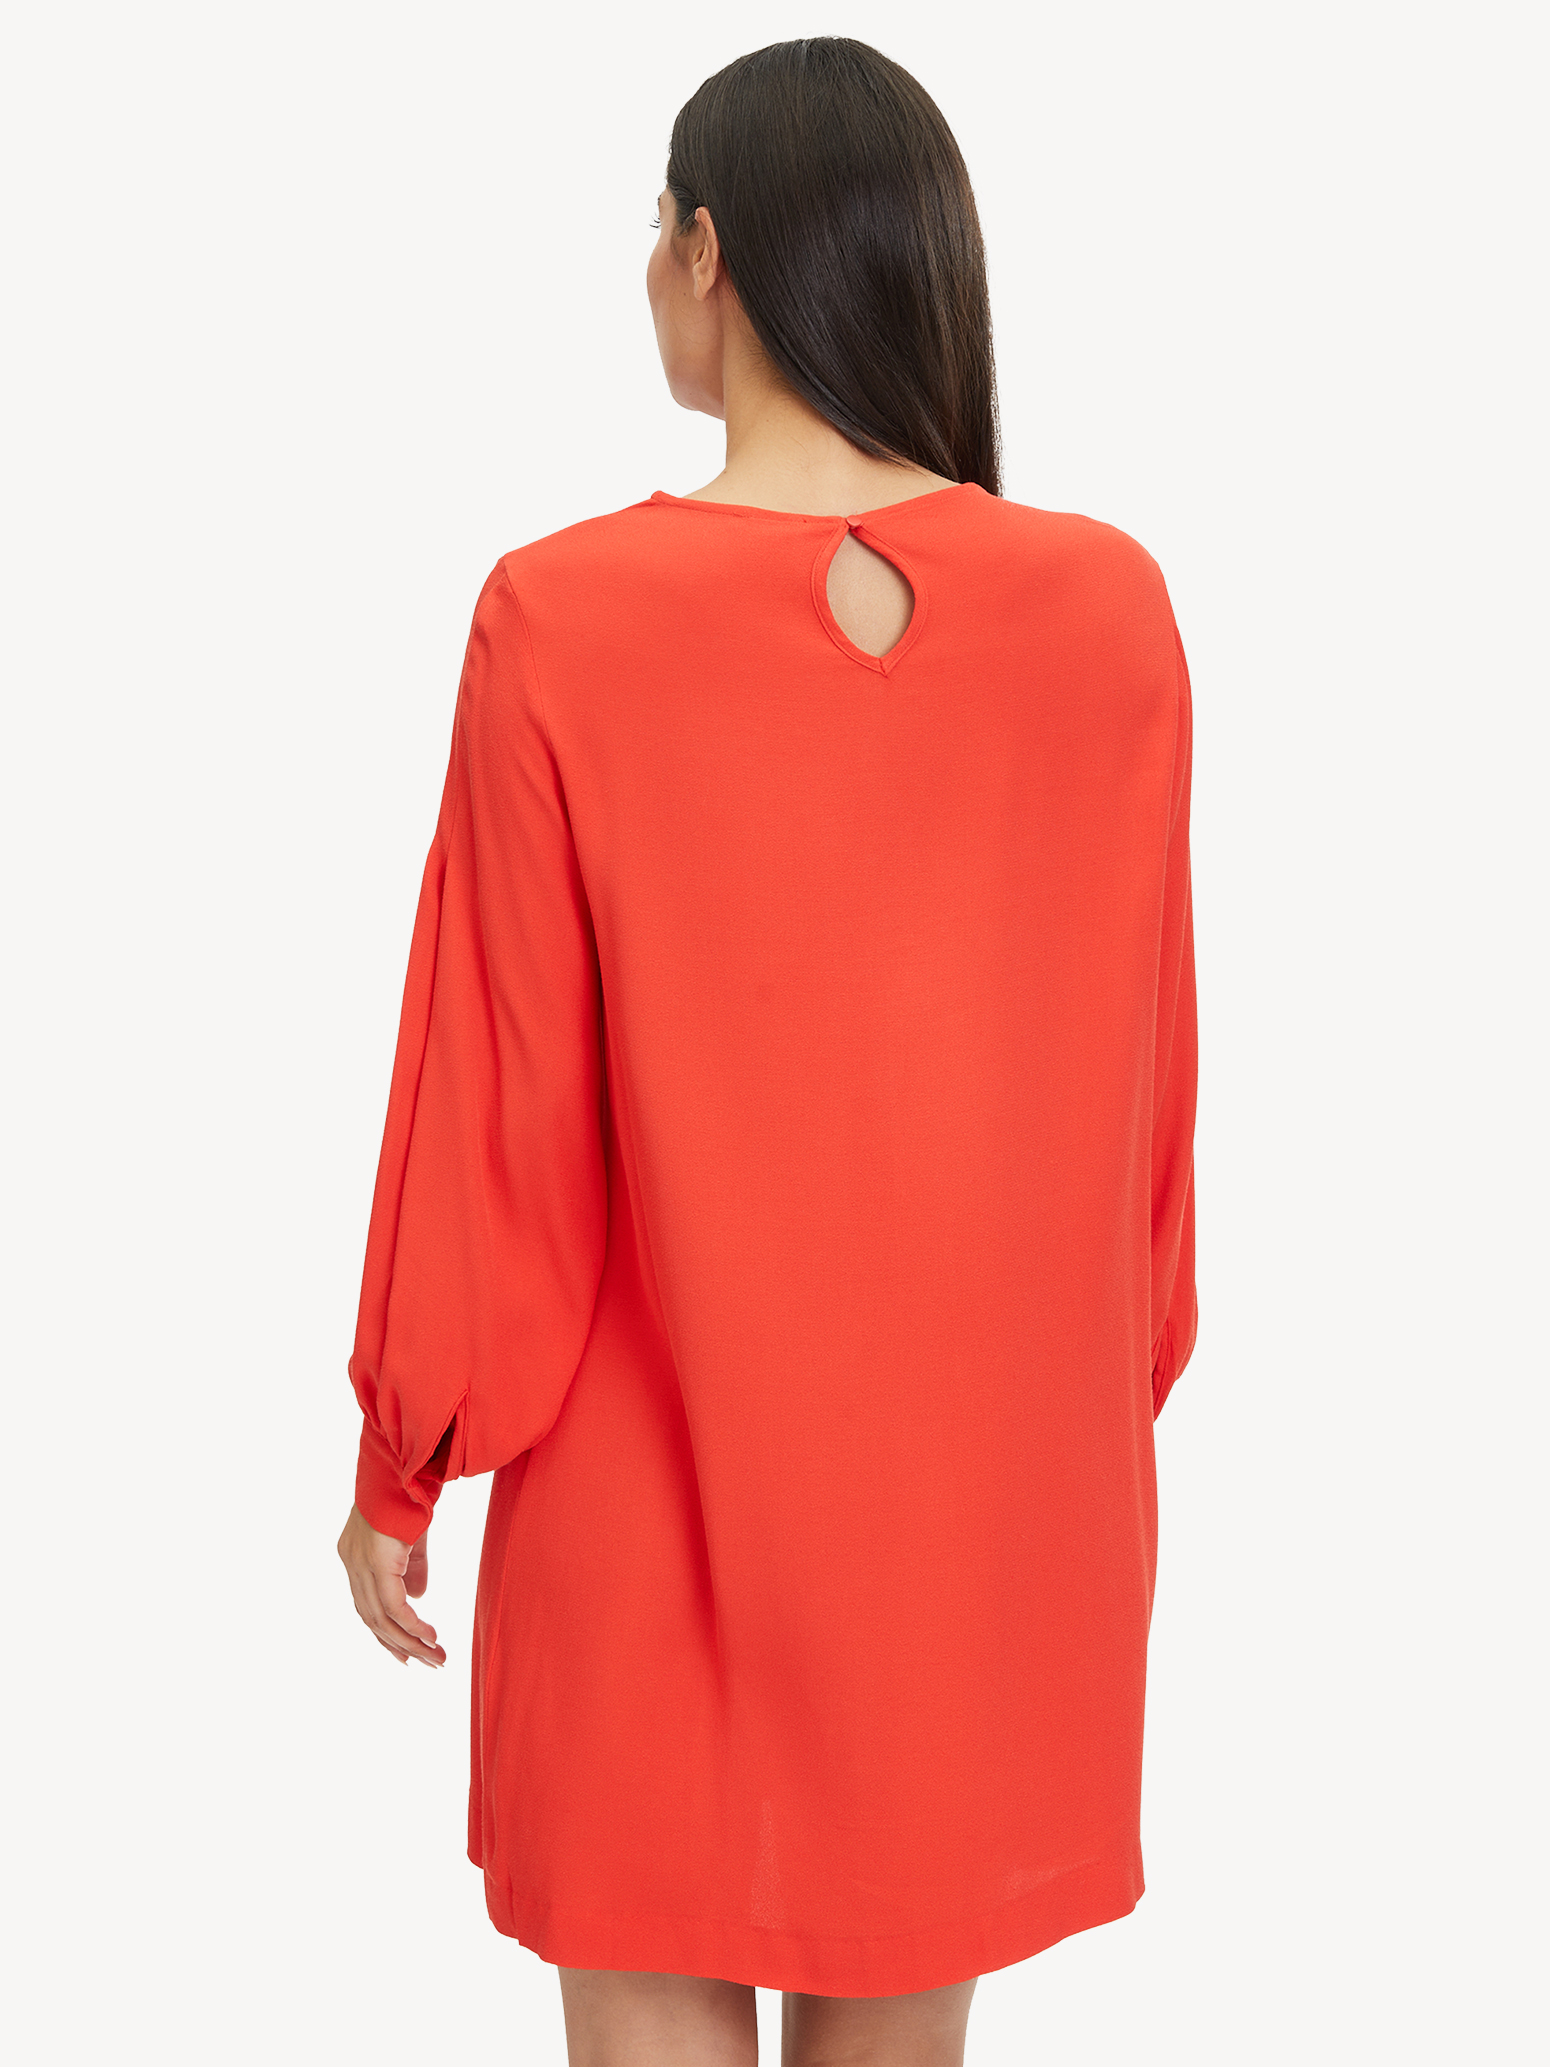 Kleid - rot TAW0356-30042: kaufen! Tamaris Kleider online